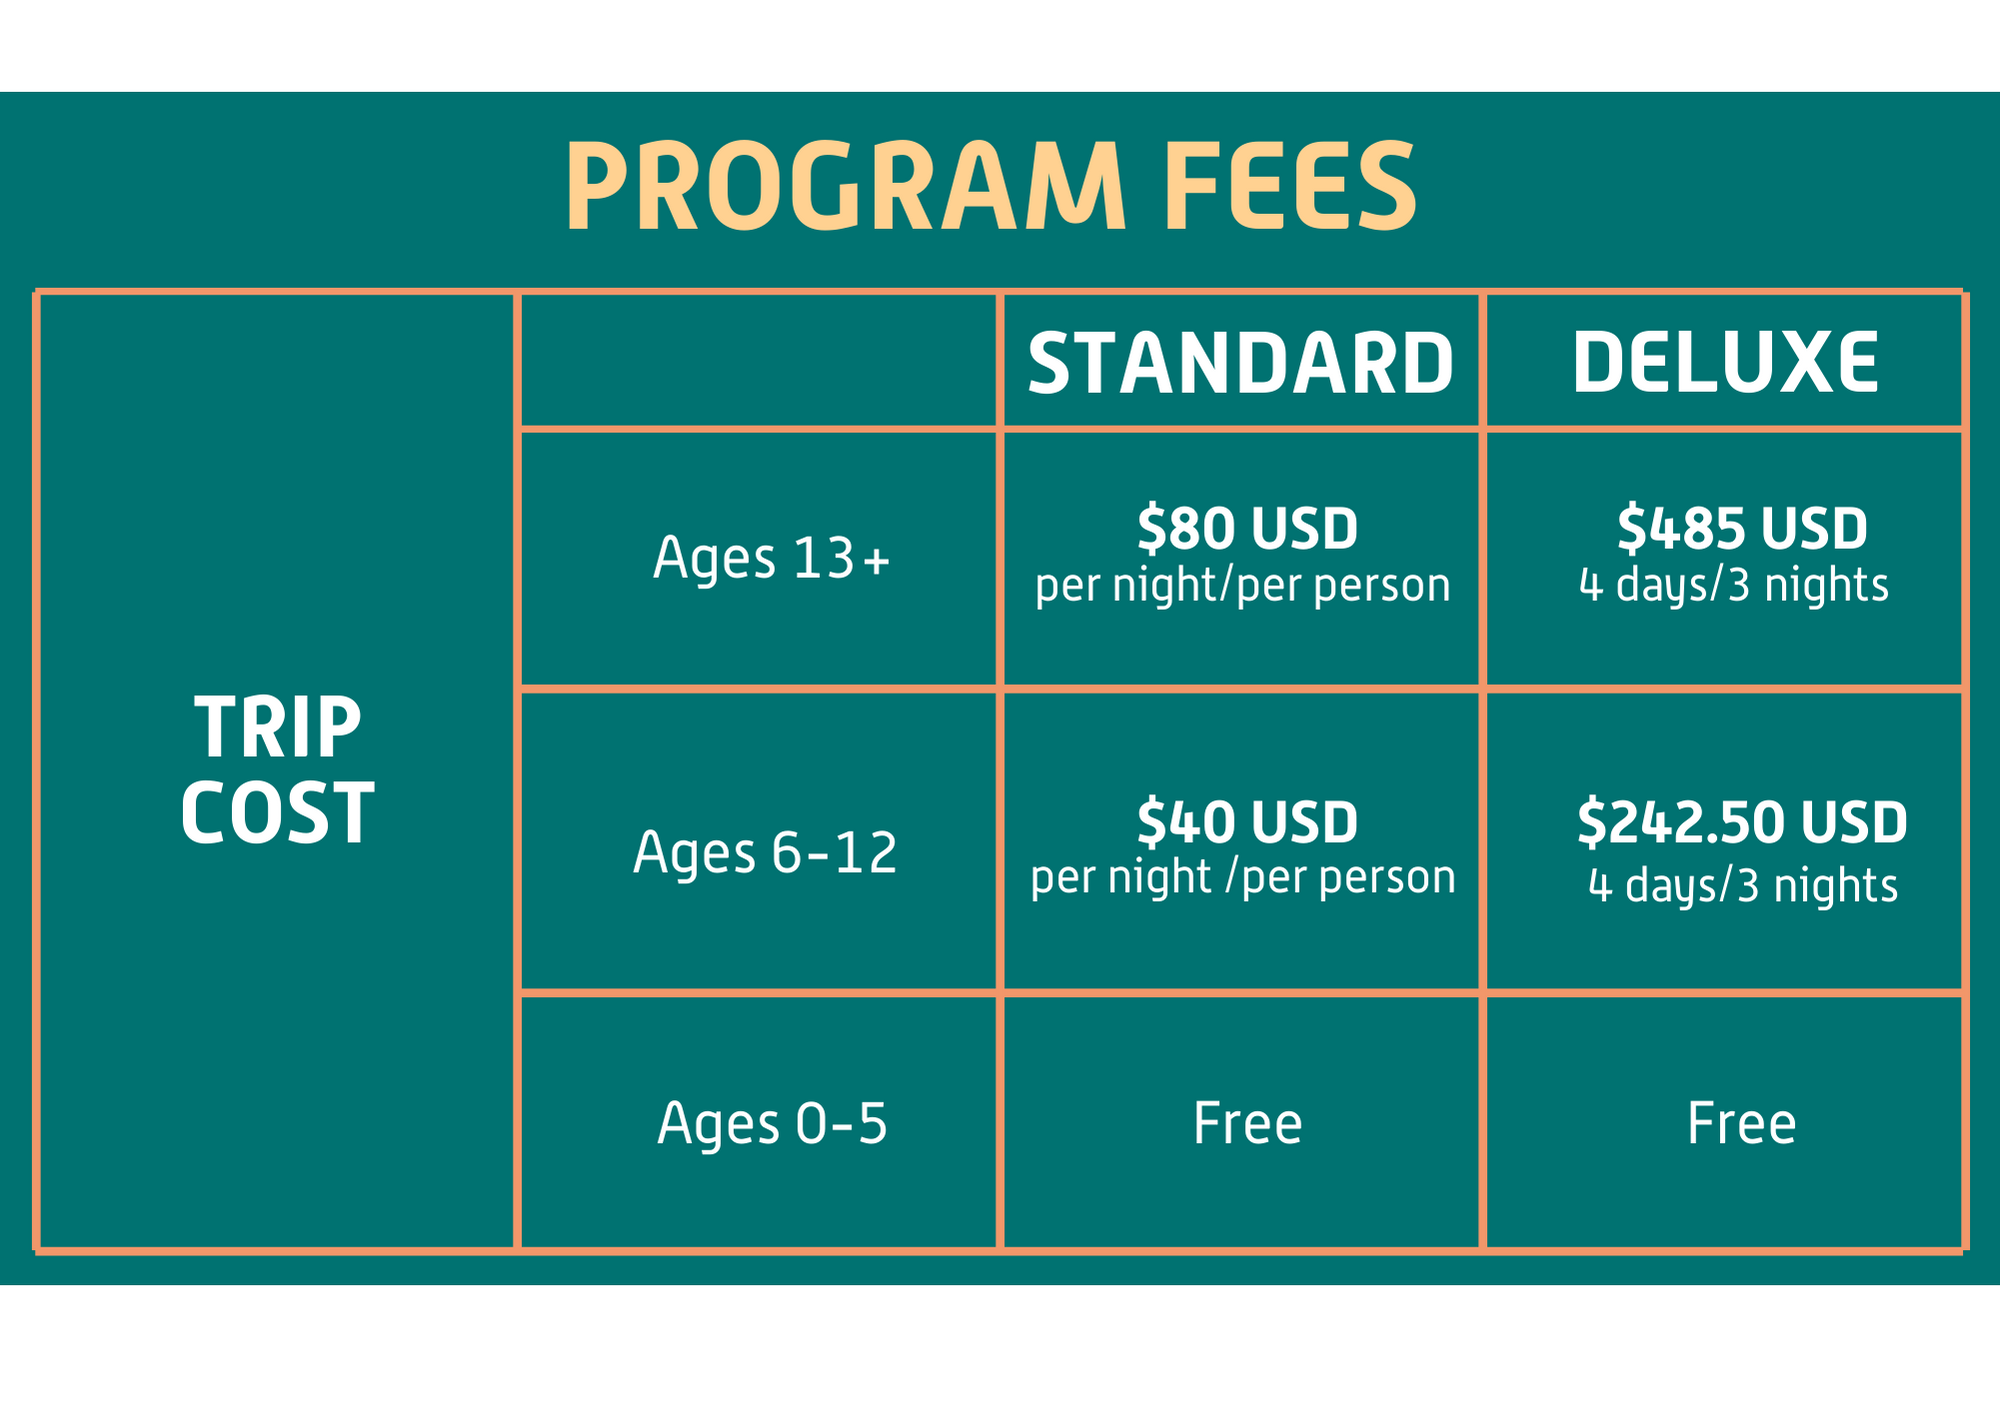 Program fees